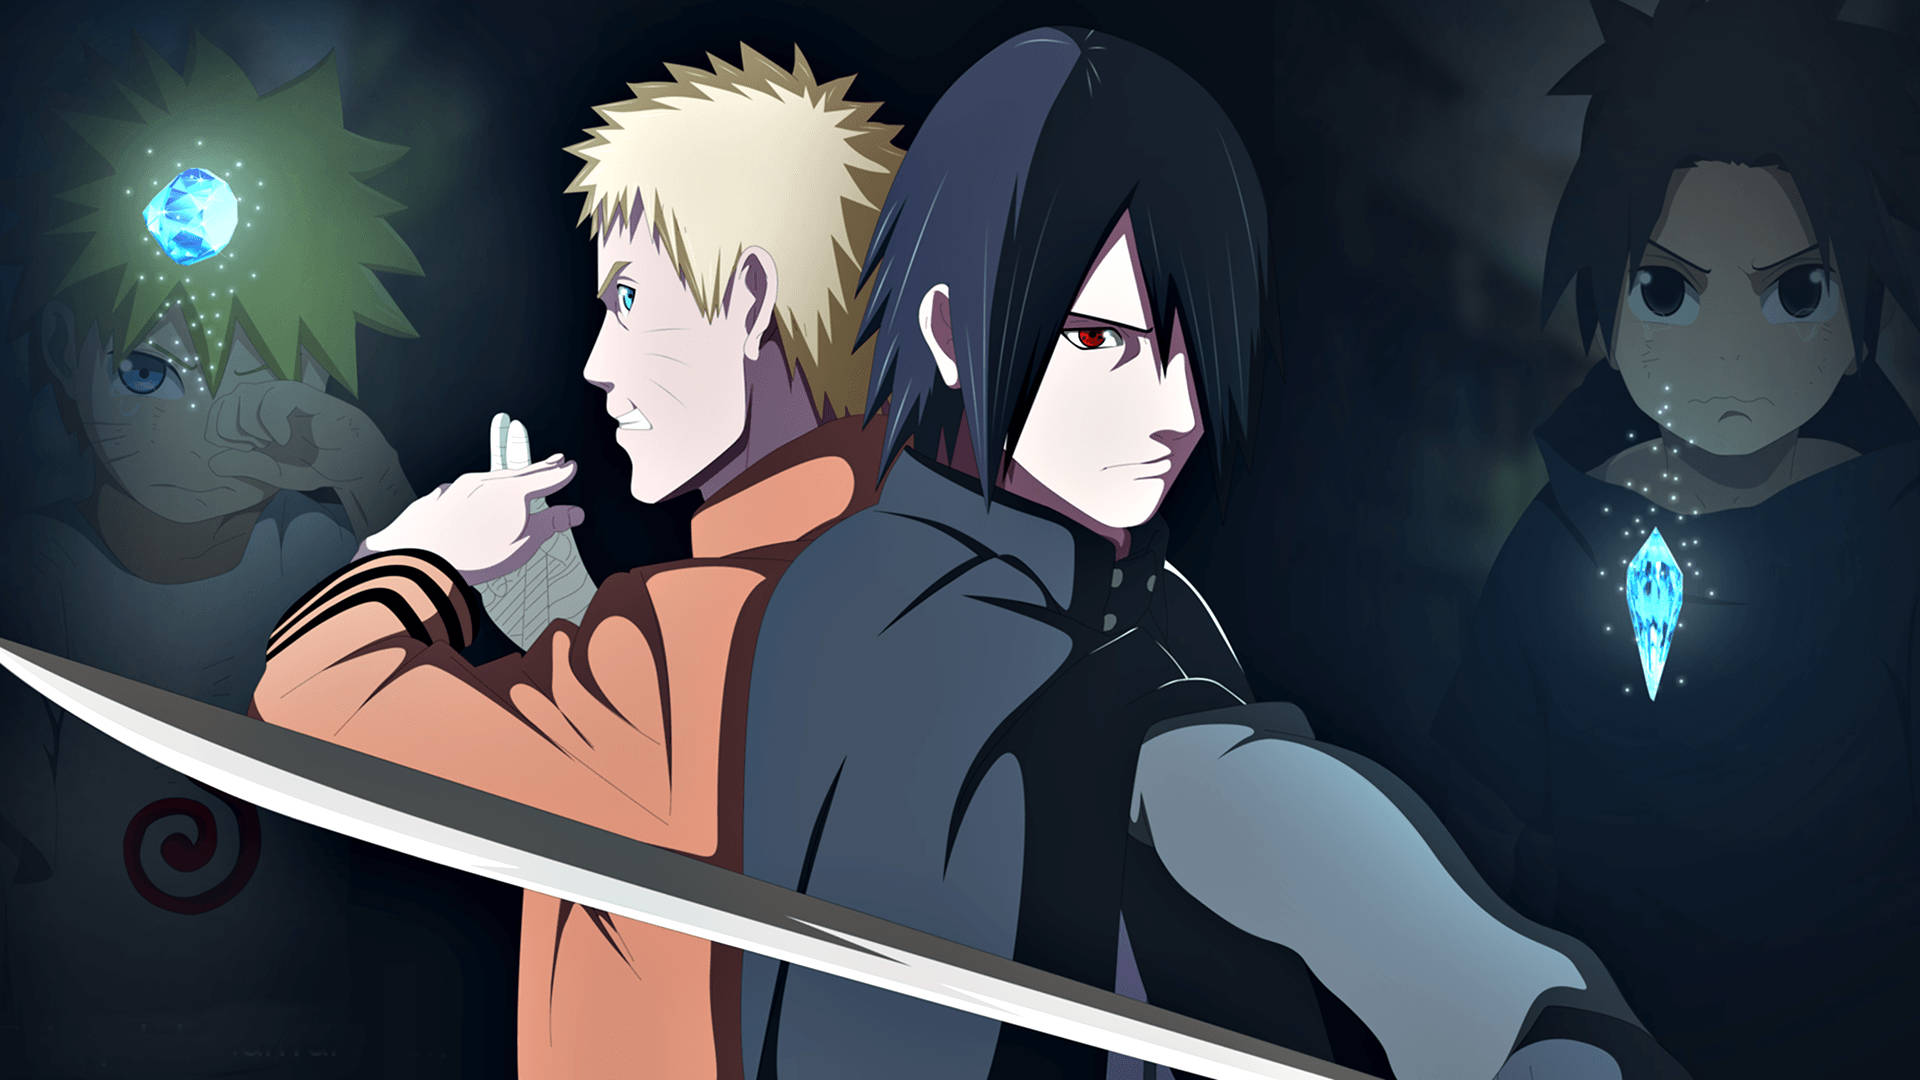 Anime Naruto And Sasuke Fighting Together Picture